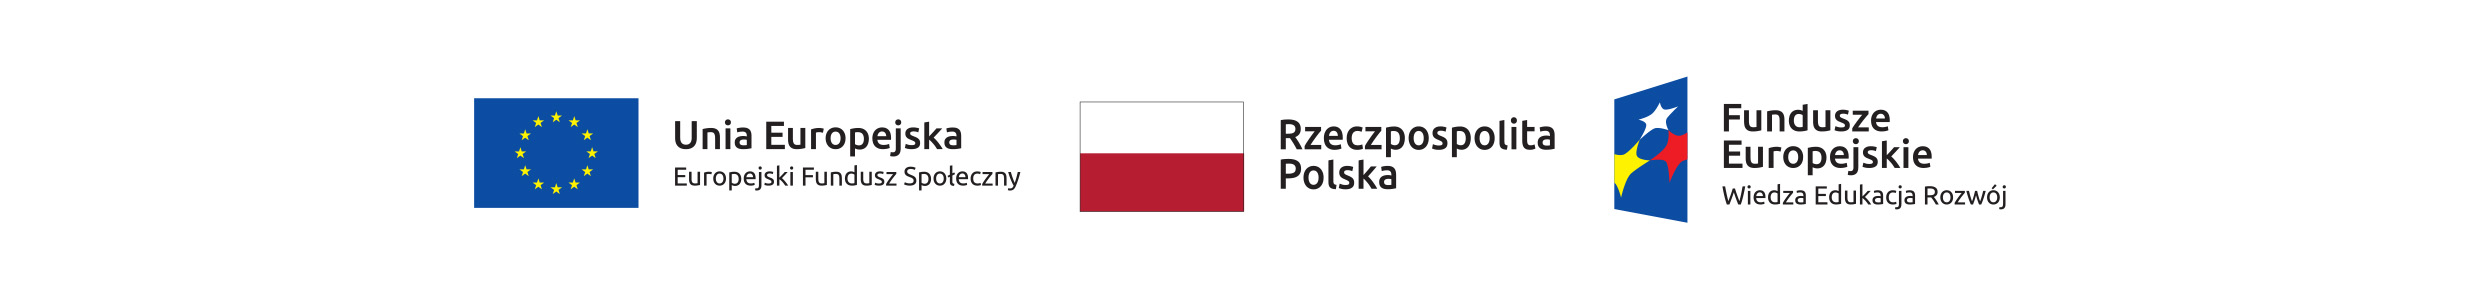 Logotypy funduszy europejskich i flaga Polski